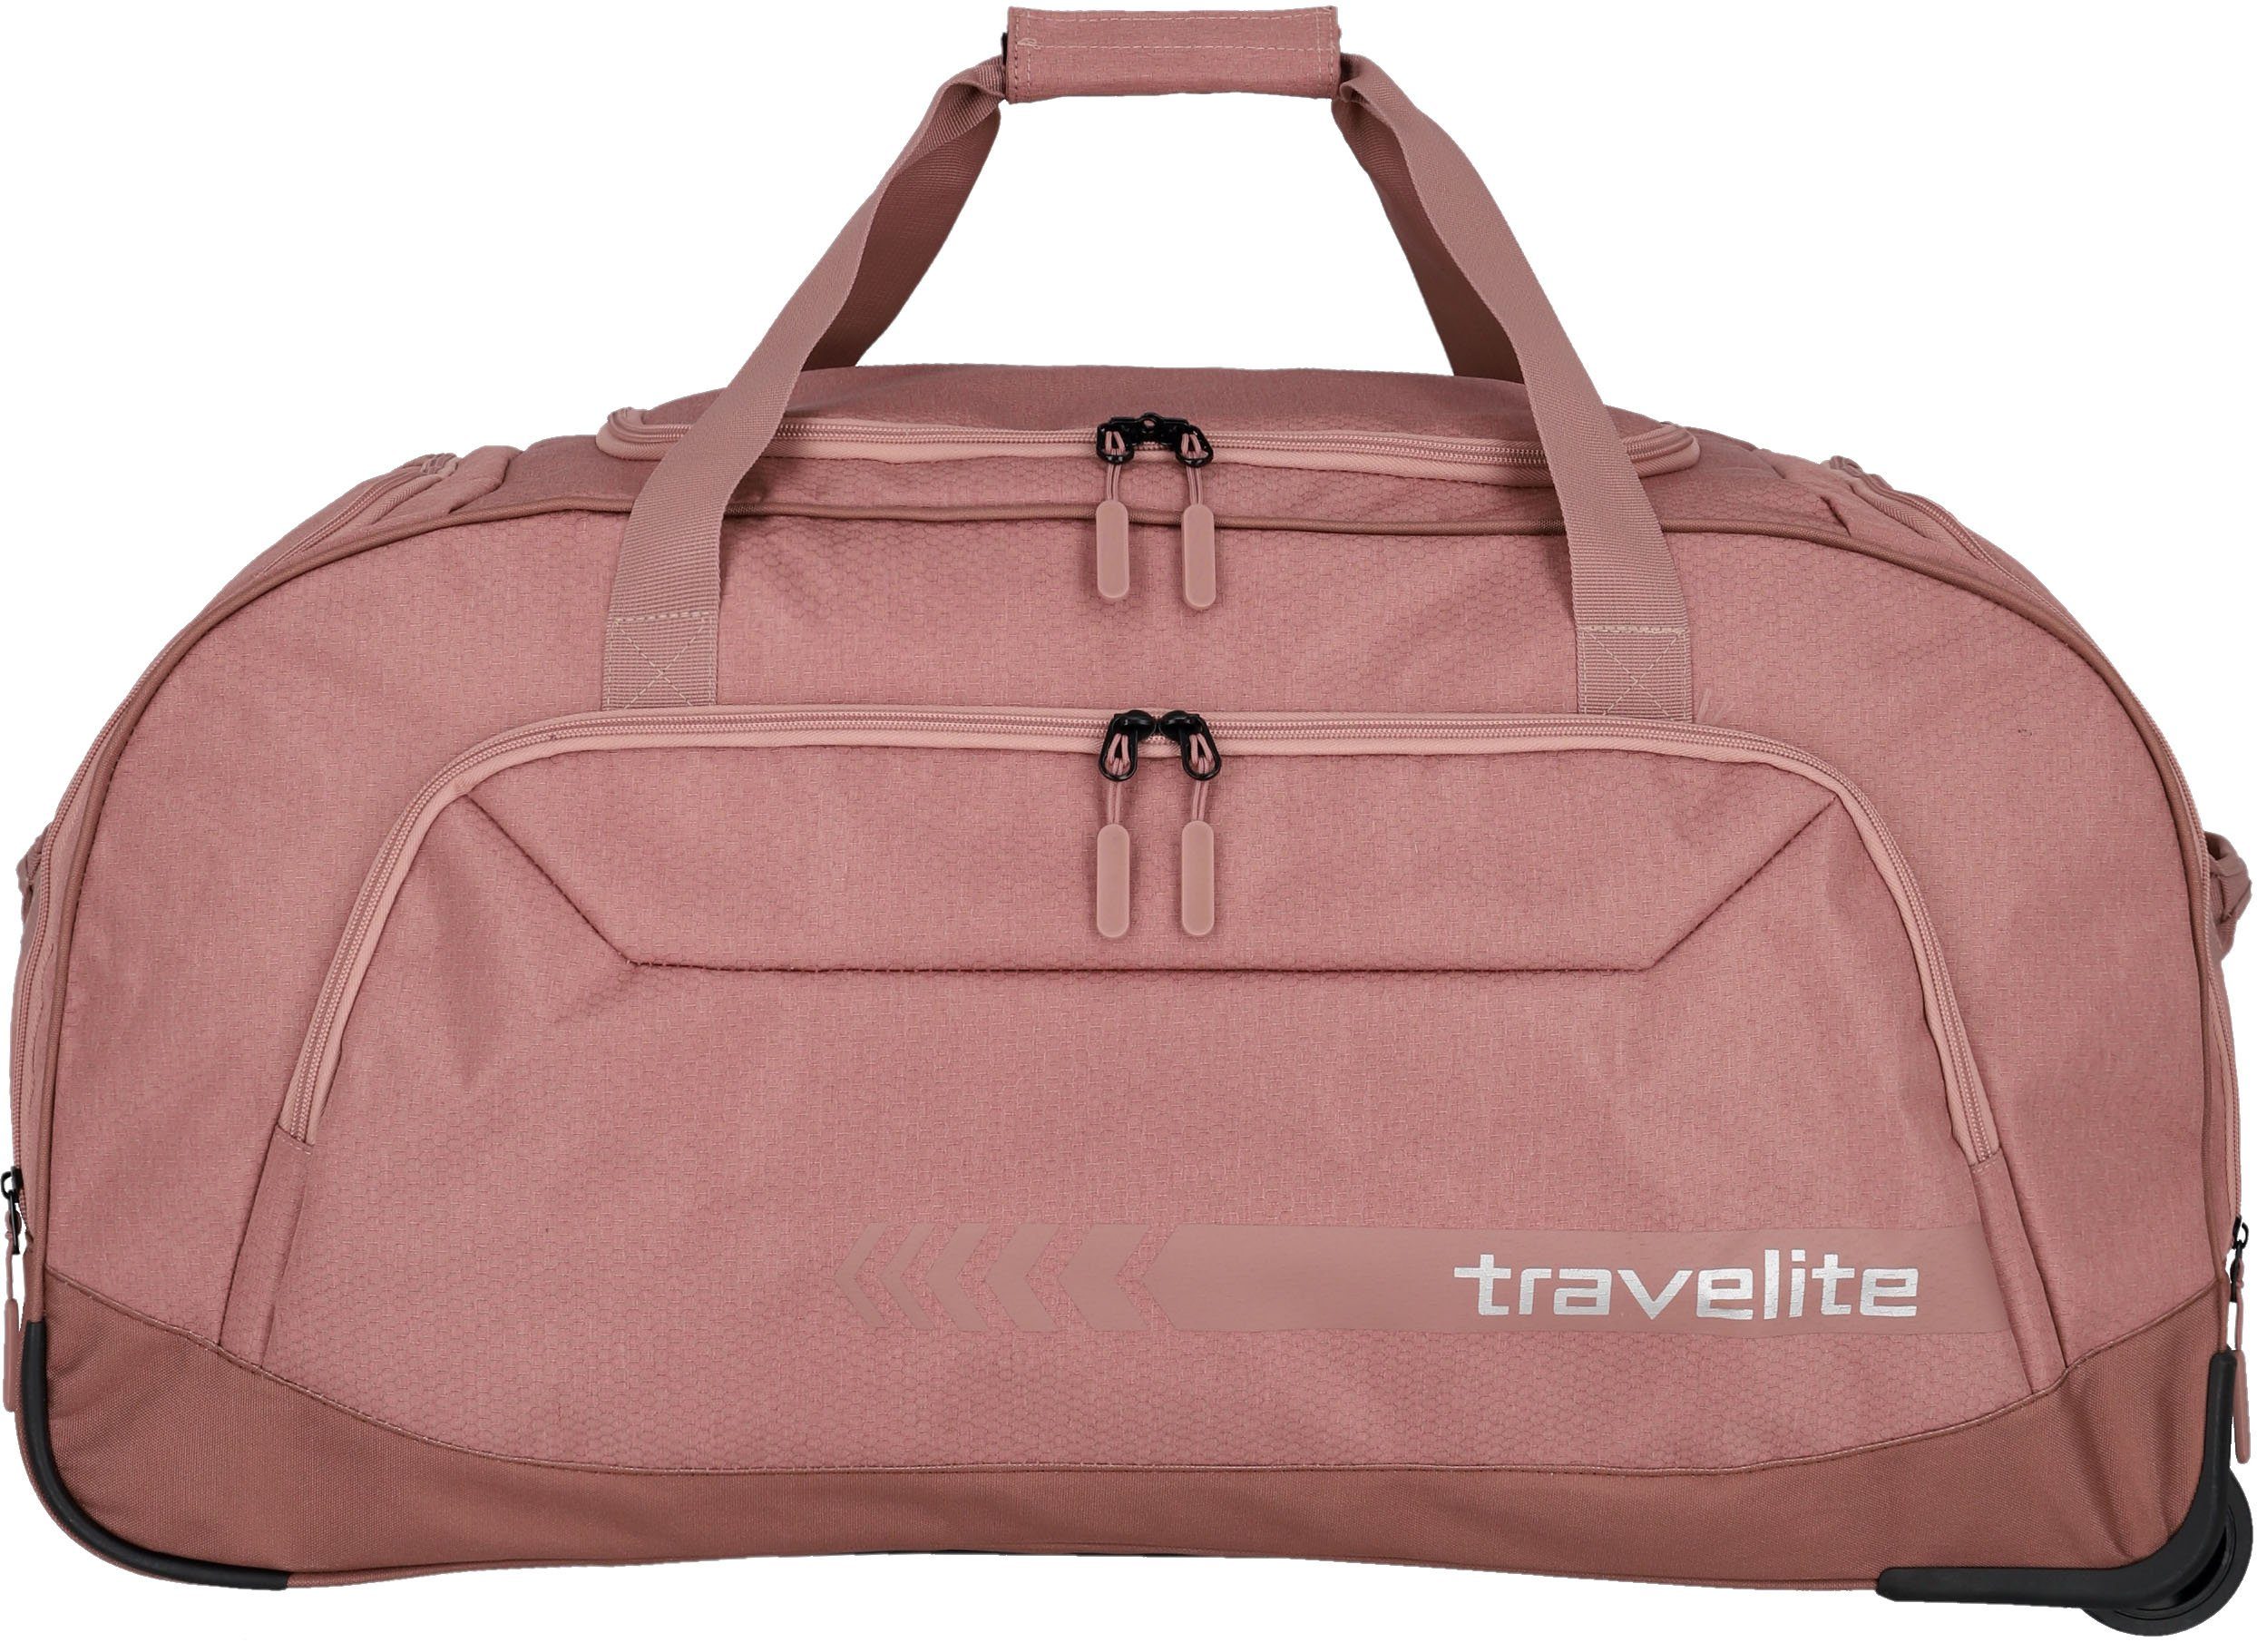 travelite Reisetasche Kick Off XL, 77 cm, Duffle Bag Reisegepäck Sporttasche Reisebag mit Trolleyfunktion